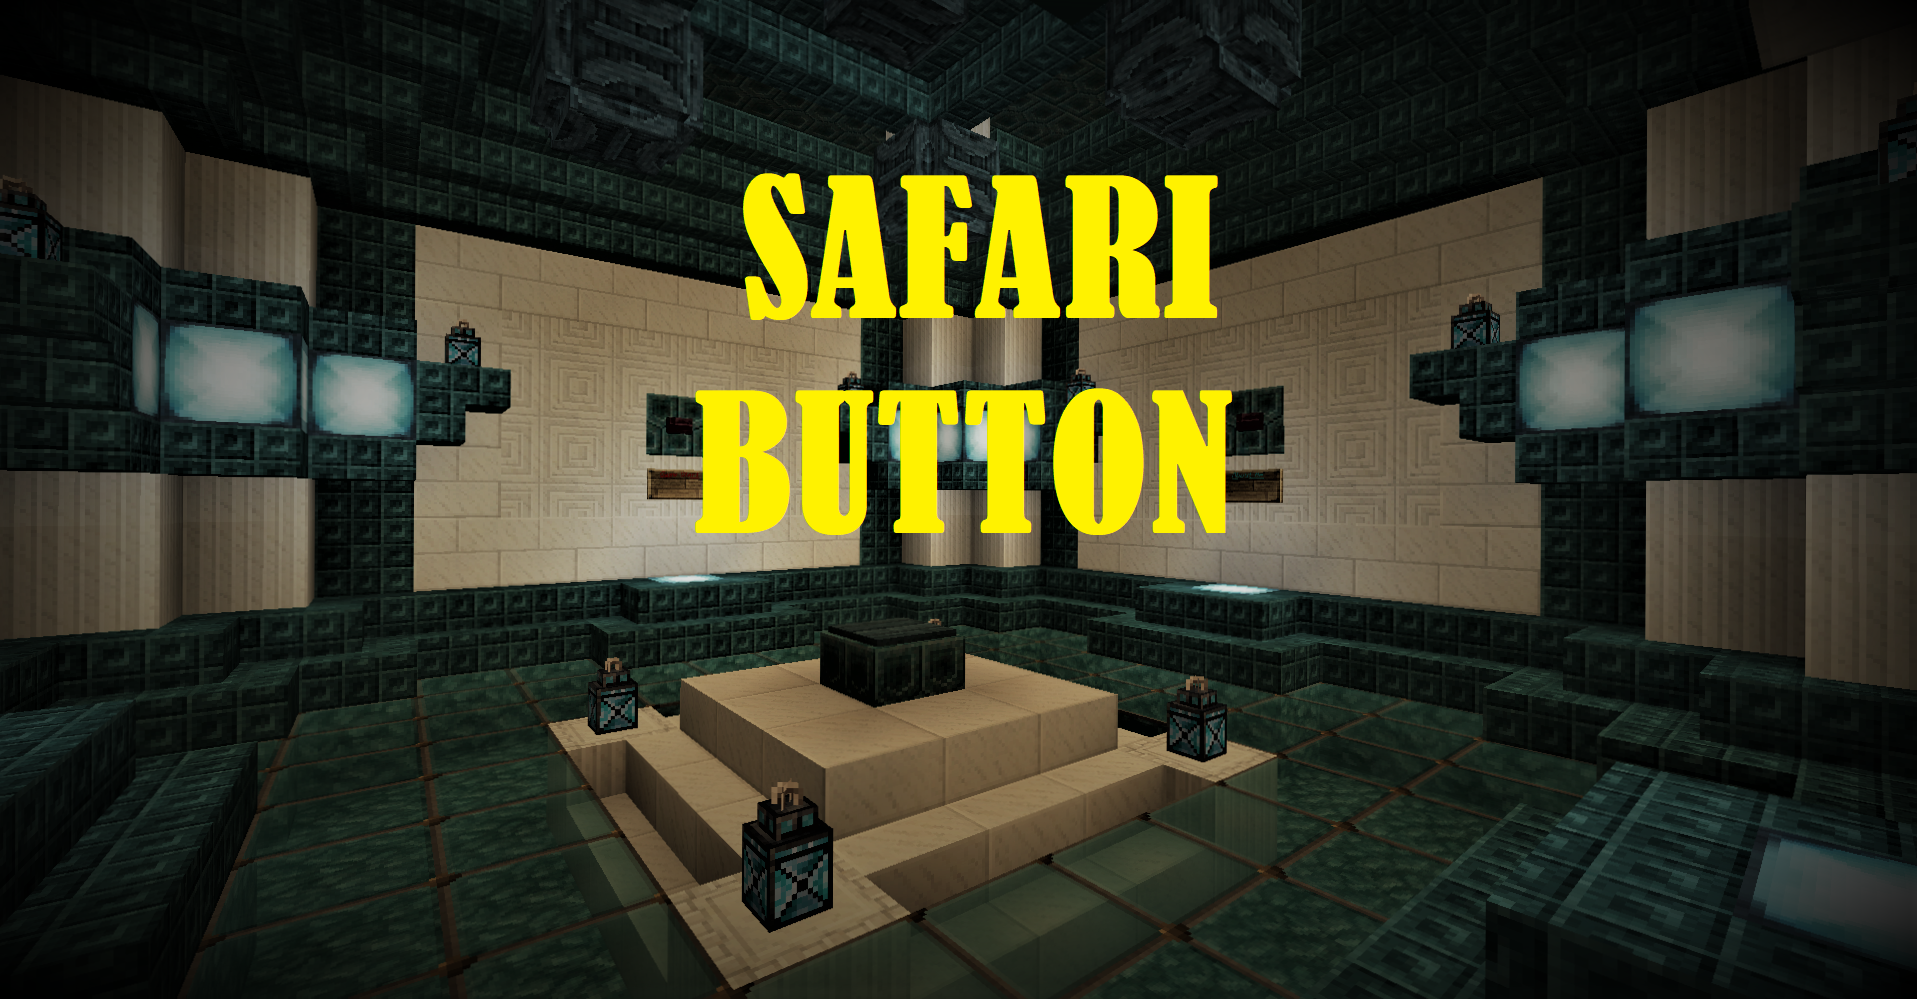 Descarca Safari Button pentru Minecraft 1.16.4